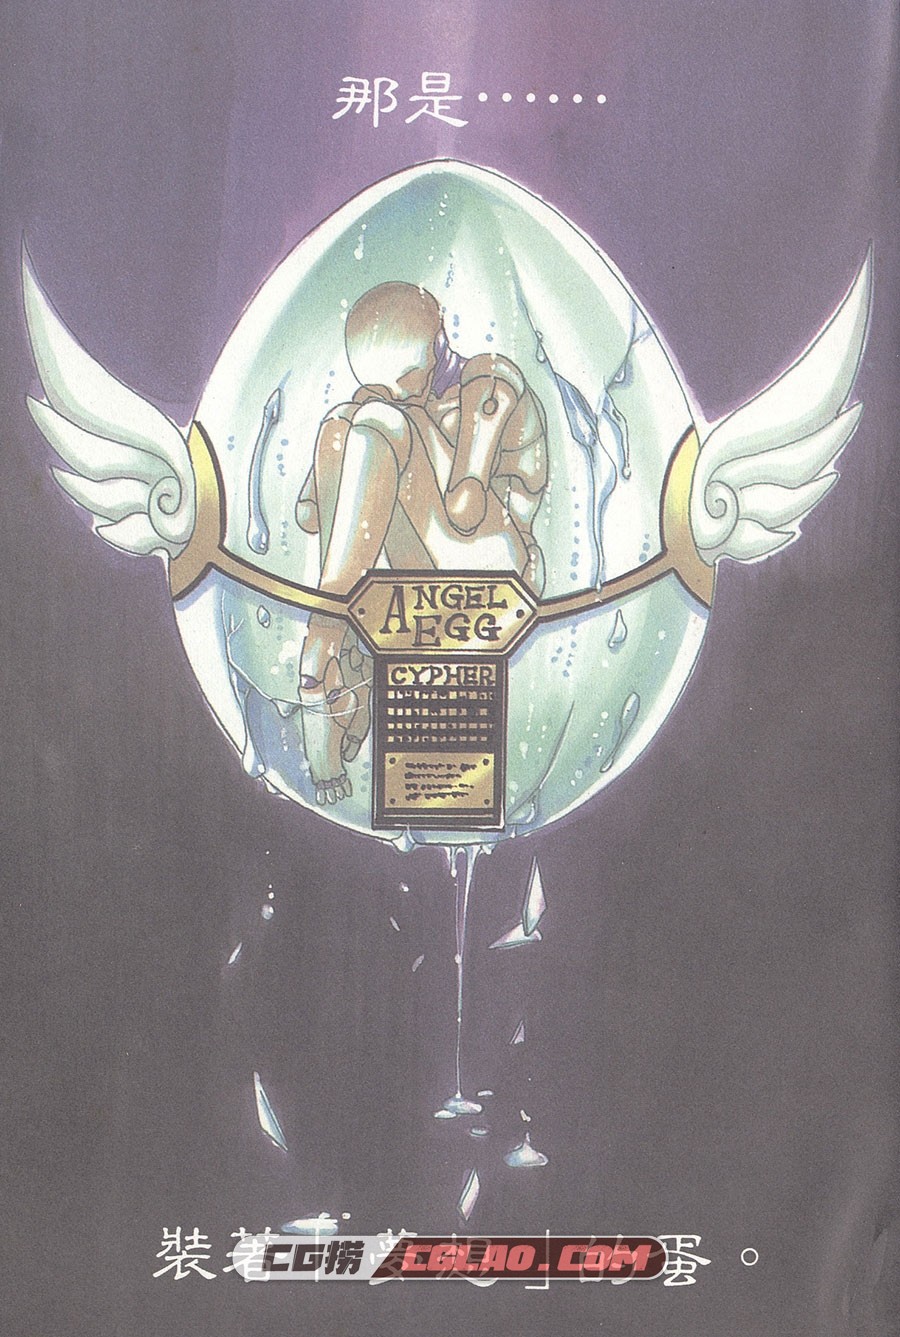 天使领域 CLAMP 1-5卷 漫画全集下载 百度网盘下载,_AL01-_0001.jpg